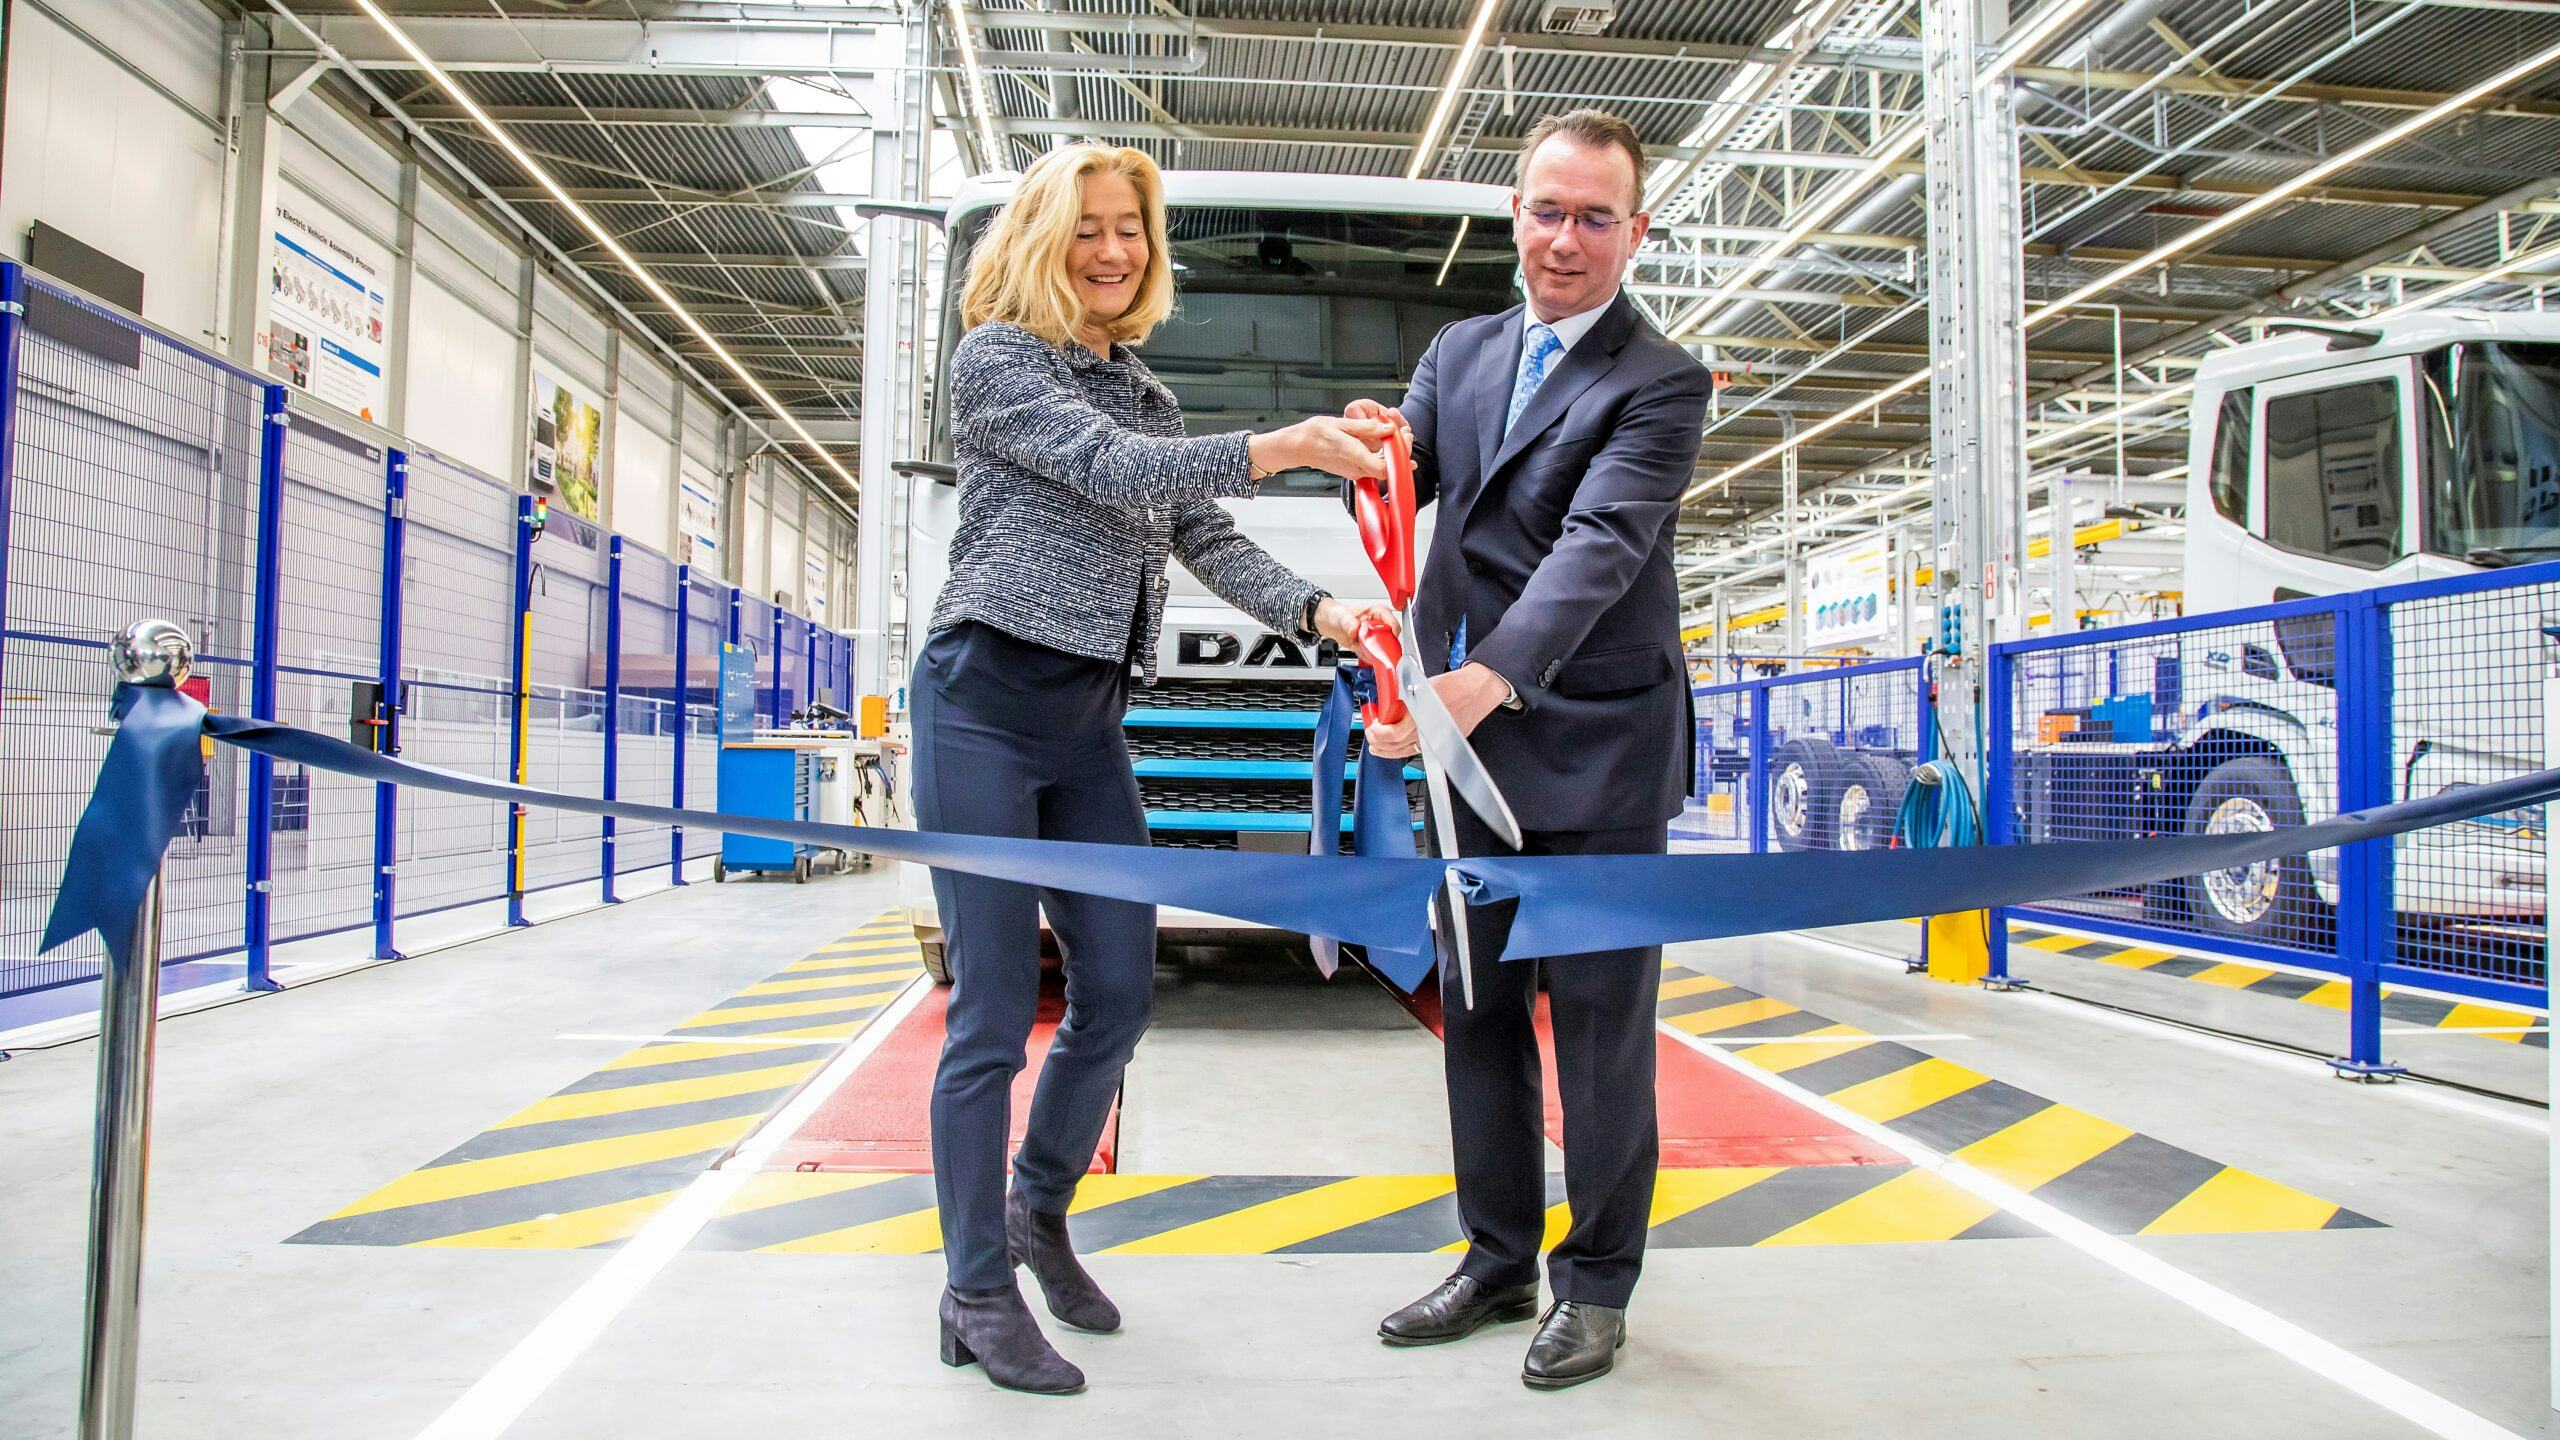 De nieuwe e-truckfabriek is geopend door Micky Adriaansens, minister van Economische Zaken en Klimaat en Harald Seidel, president-directeur van DAF Trucks.